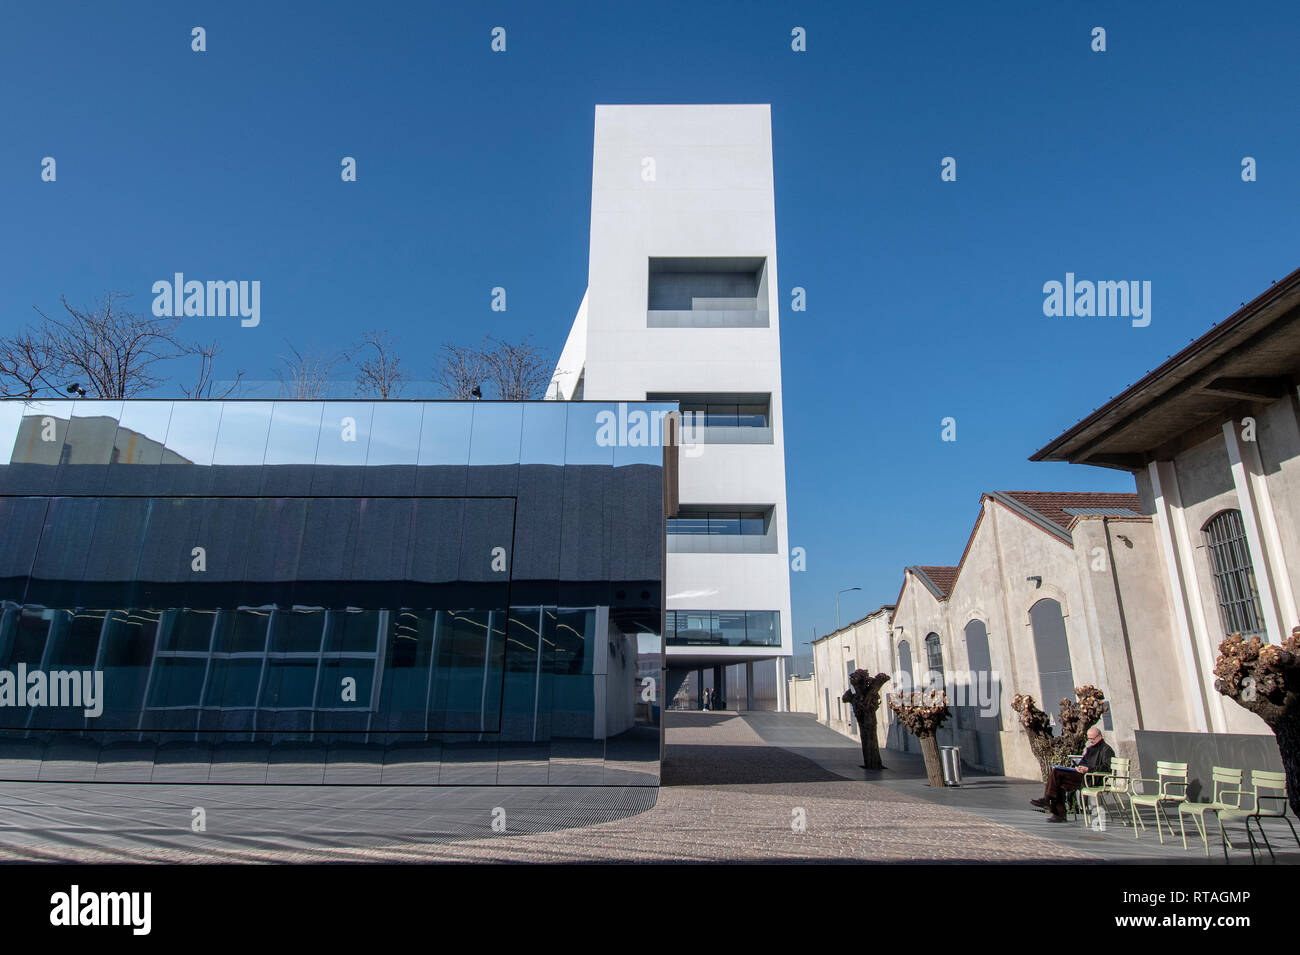 La Torre edificio della Fondazione Prada Milano Italia, progettato da Rem Koohaas / OMA, esterna Foto Stock